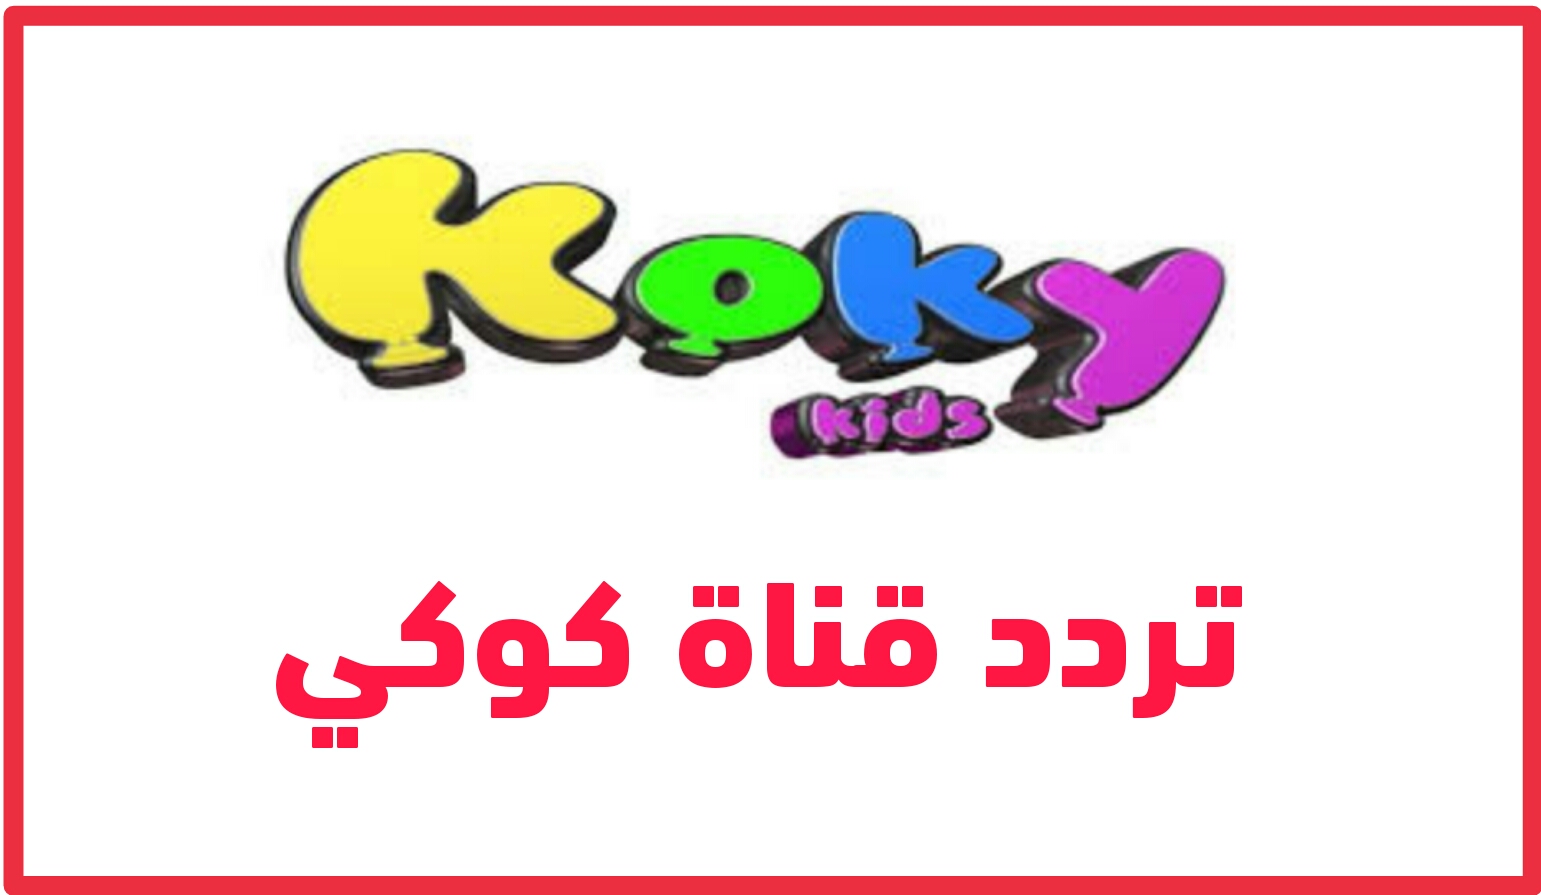 تردد قناة كوكي Koky الجديد 2022 على النايل سات بجودة بث HD